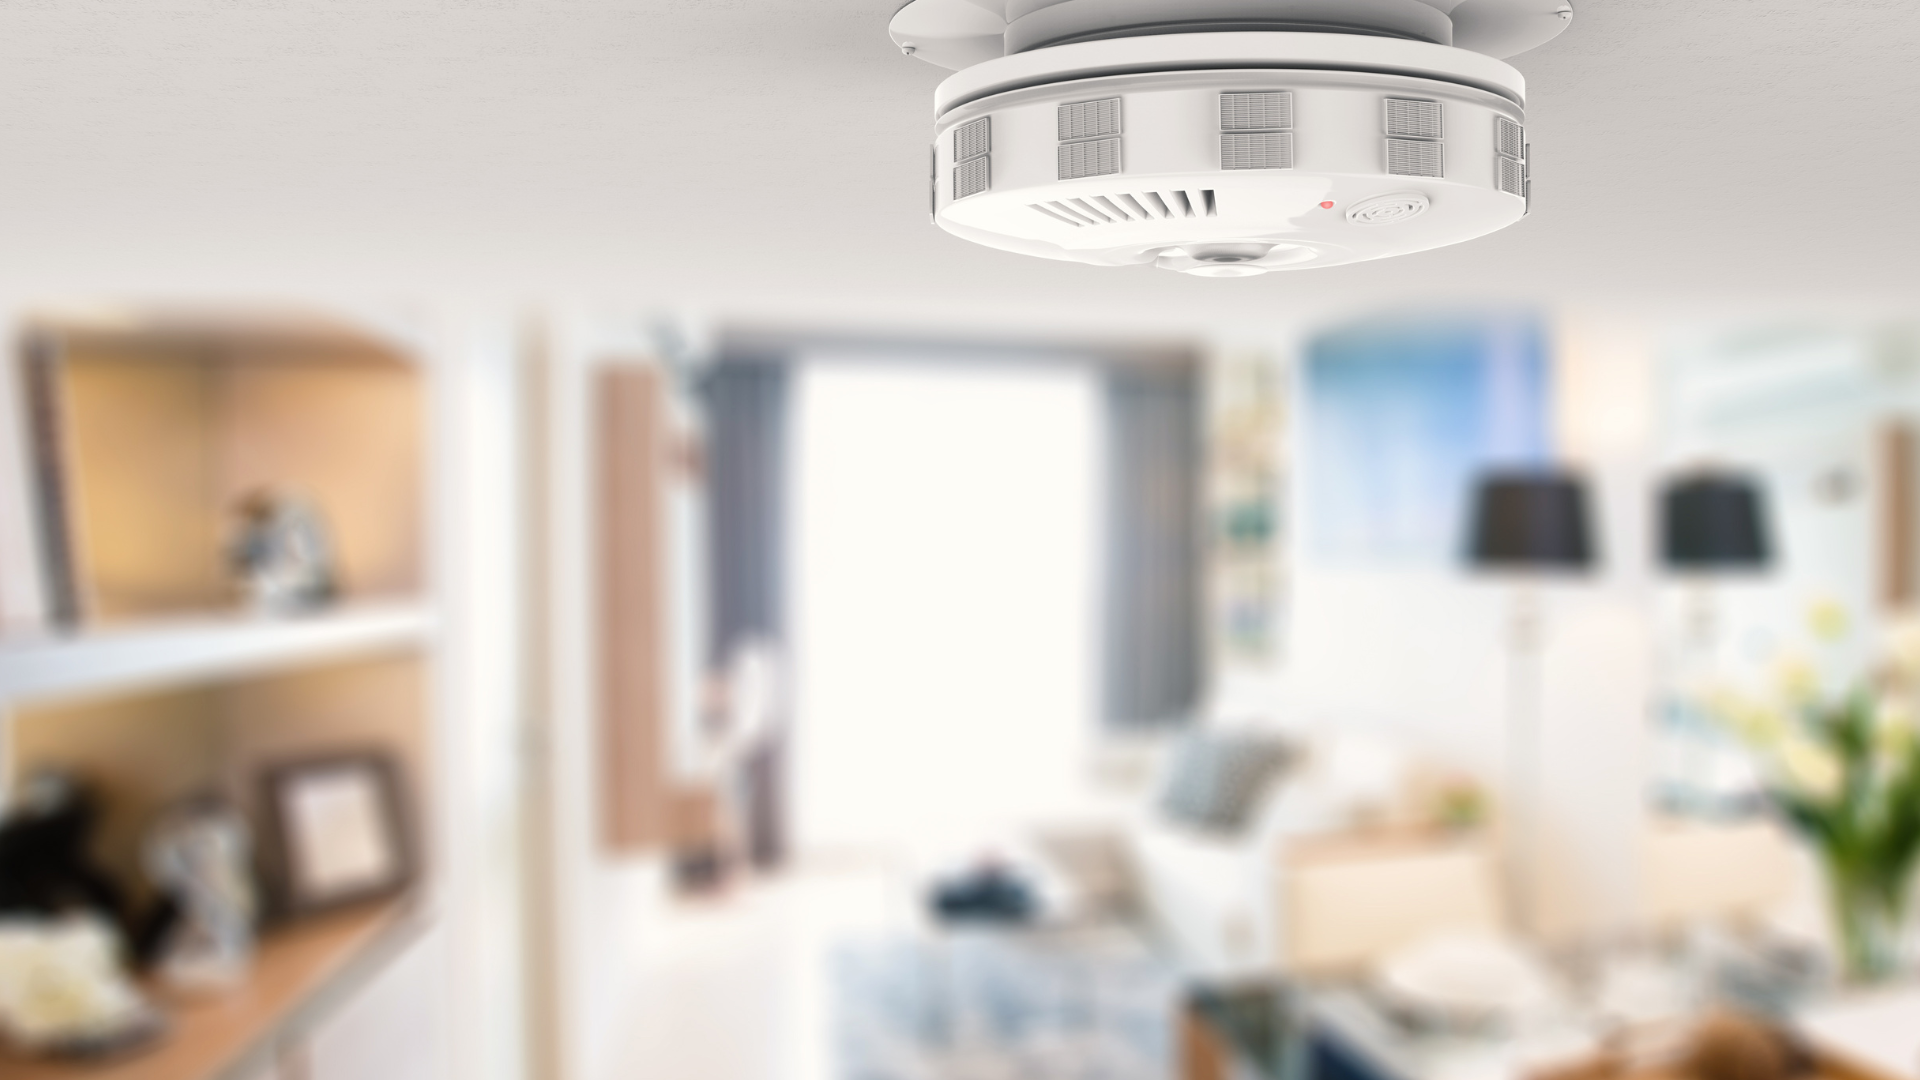 Koji detektori najviše doprinose bezbednosti kuće, stana ili firme?